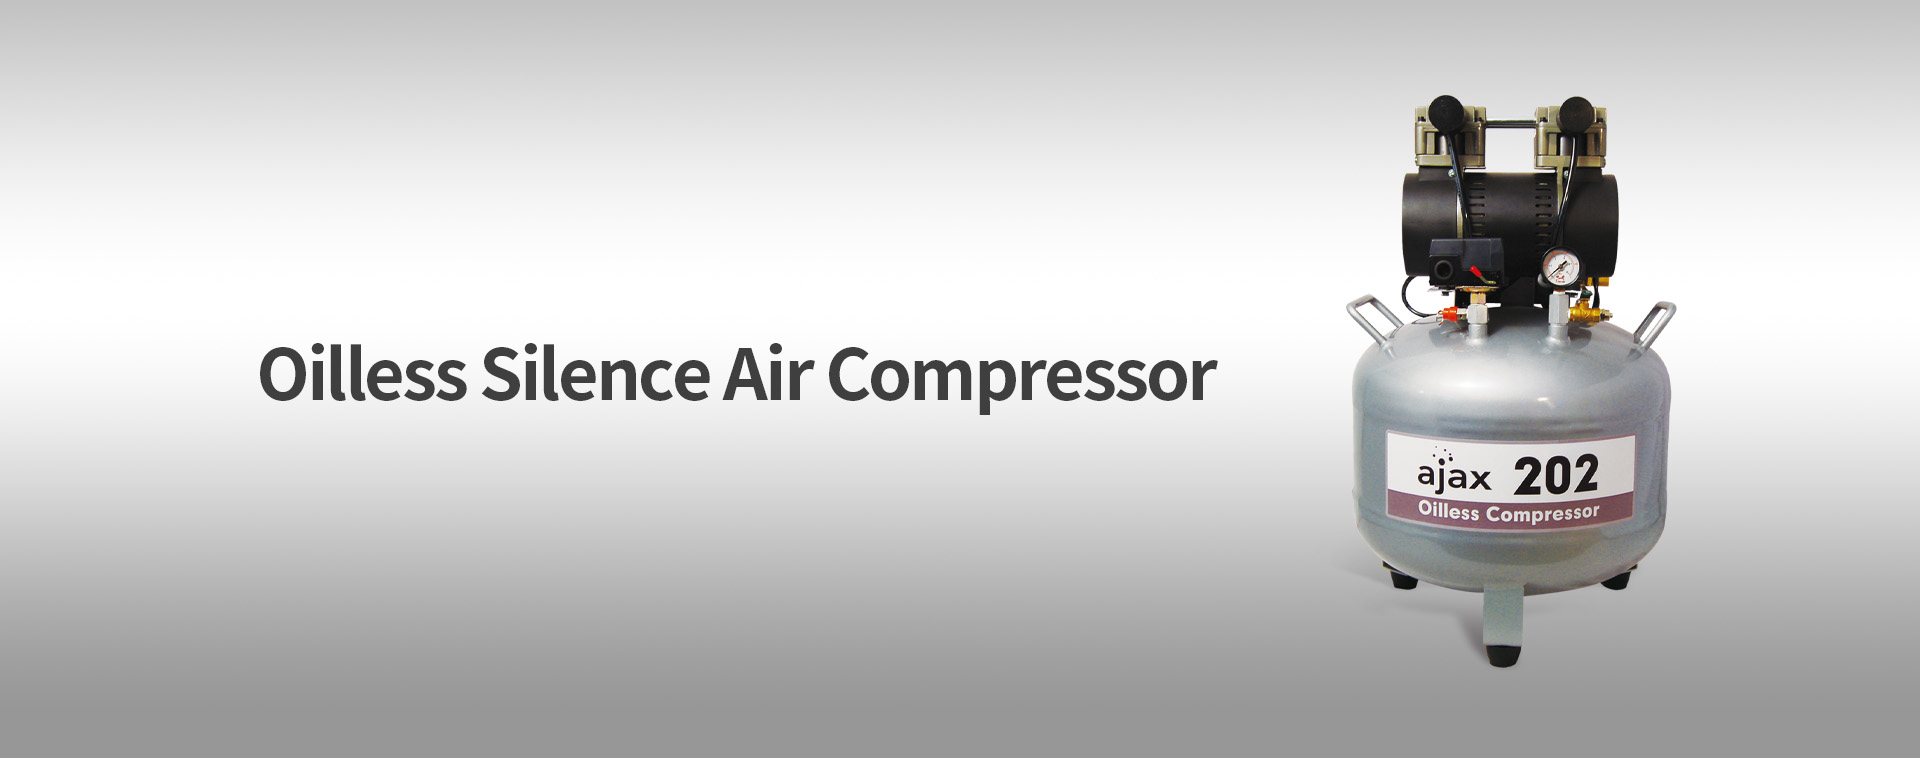 AJAX 202 Air Compressor